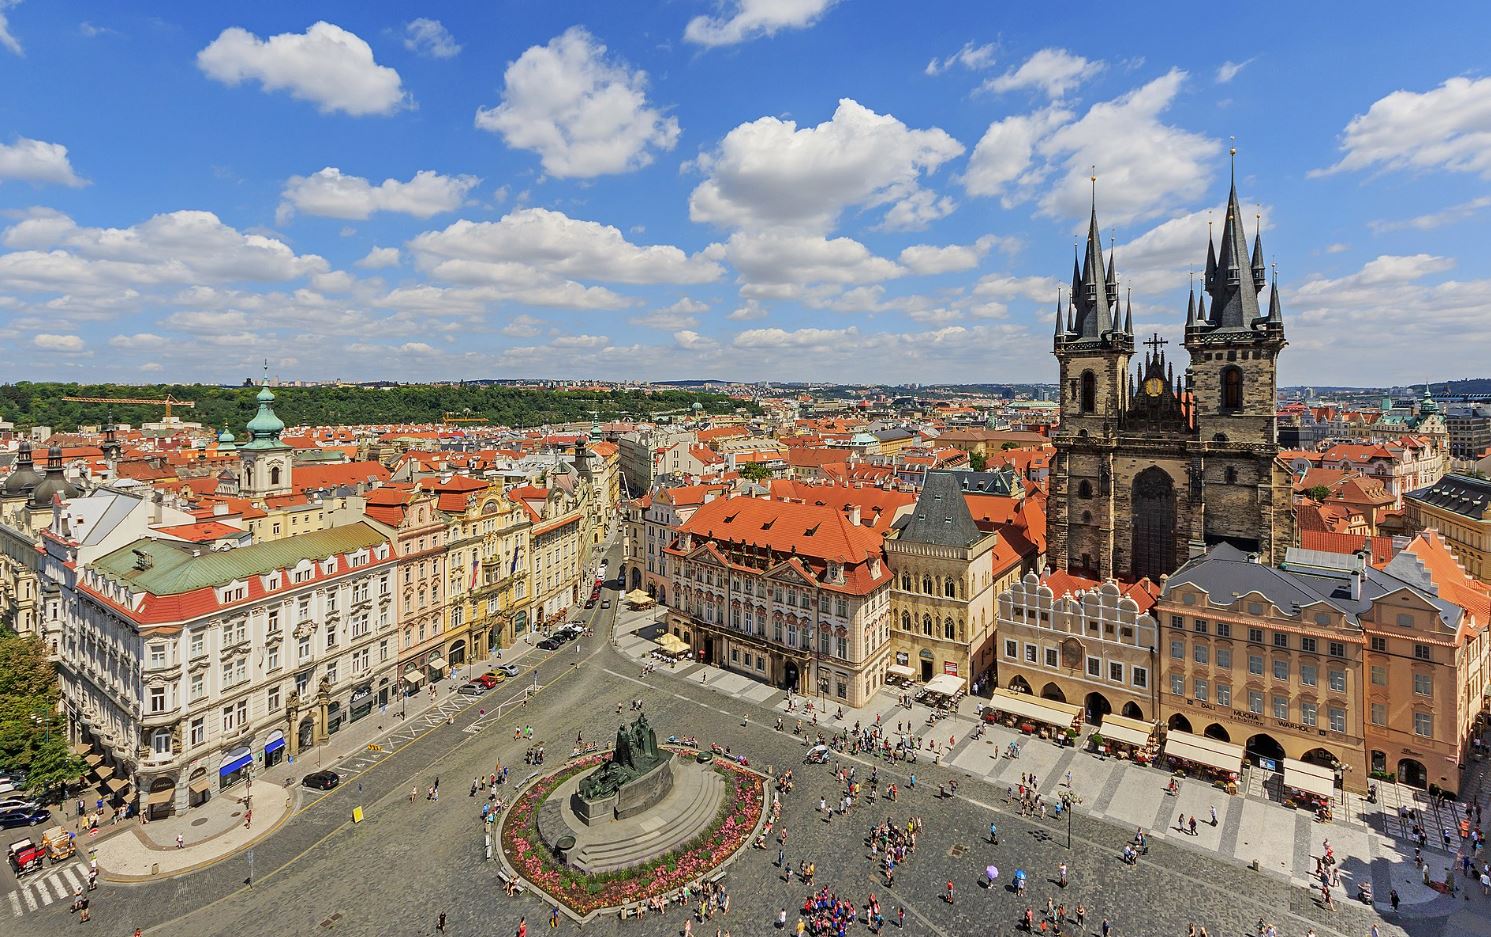 Чехия закрыла въезд российским туристам с шенгенскими визами